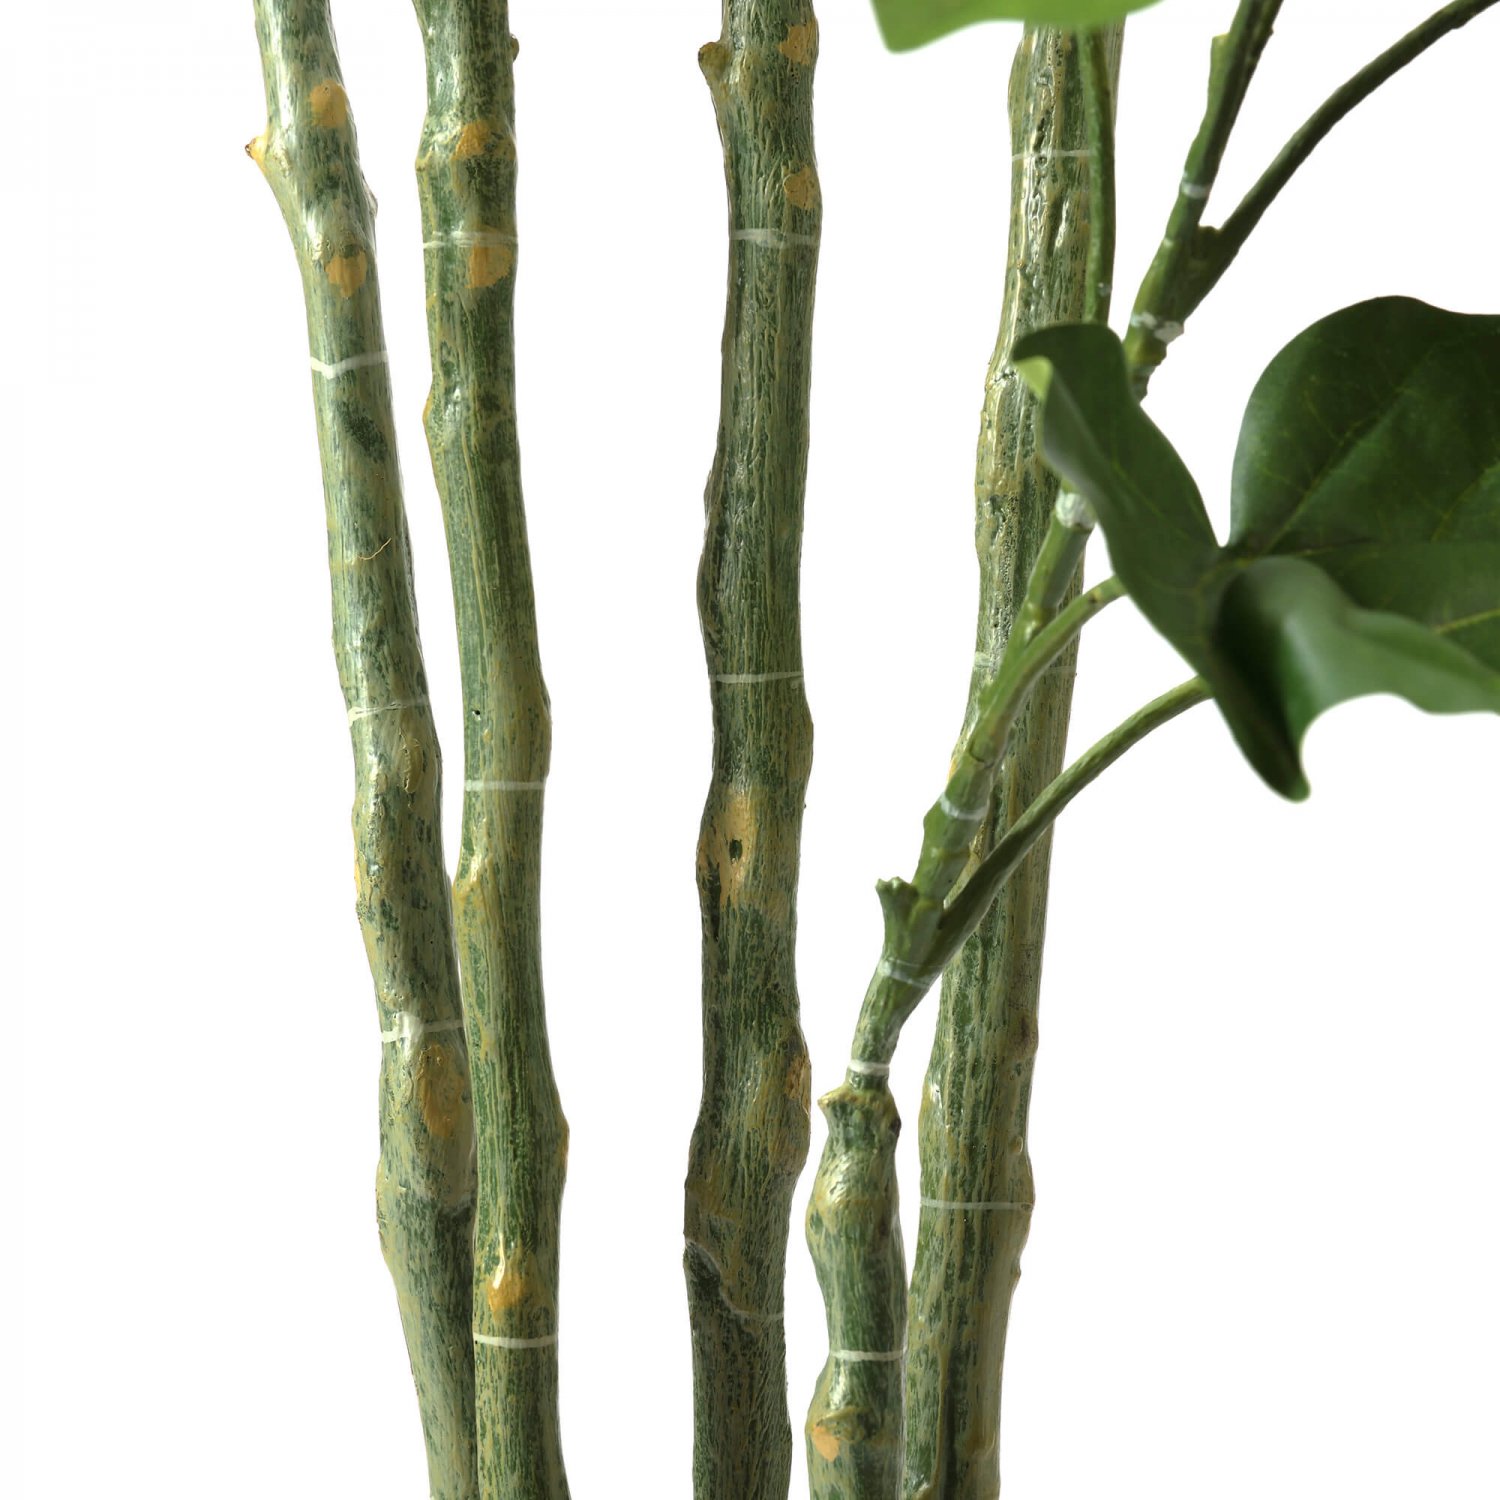 ウンベラータ GWプランター H163cm グレー 観葉植物 フェイクグリーン eco 【別倉庫直送品】 